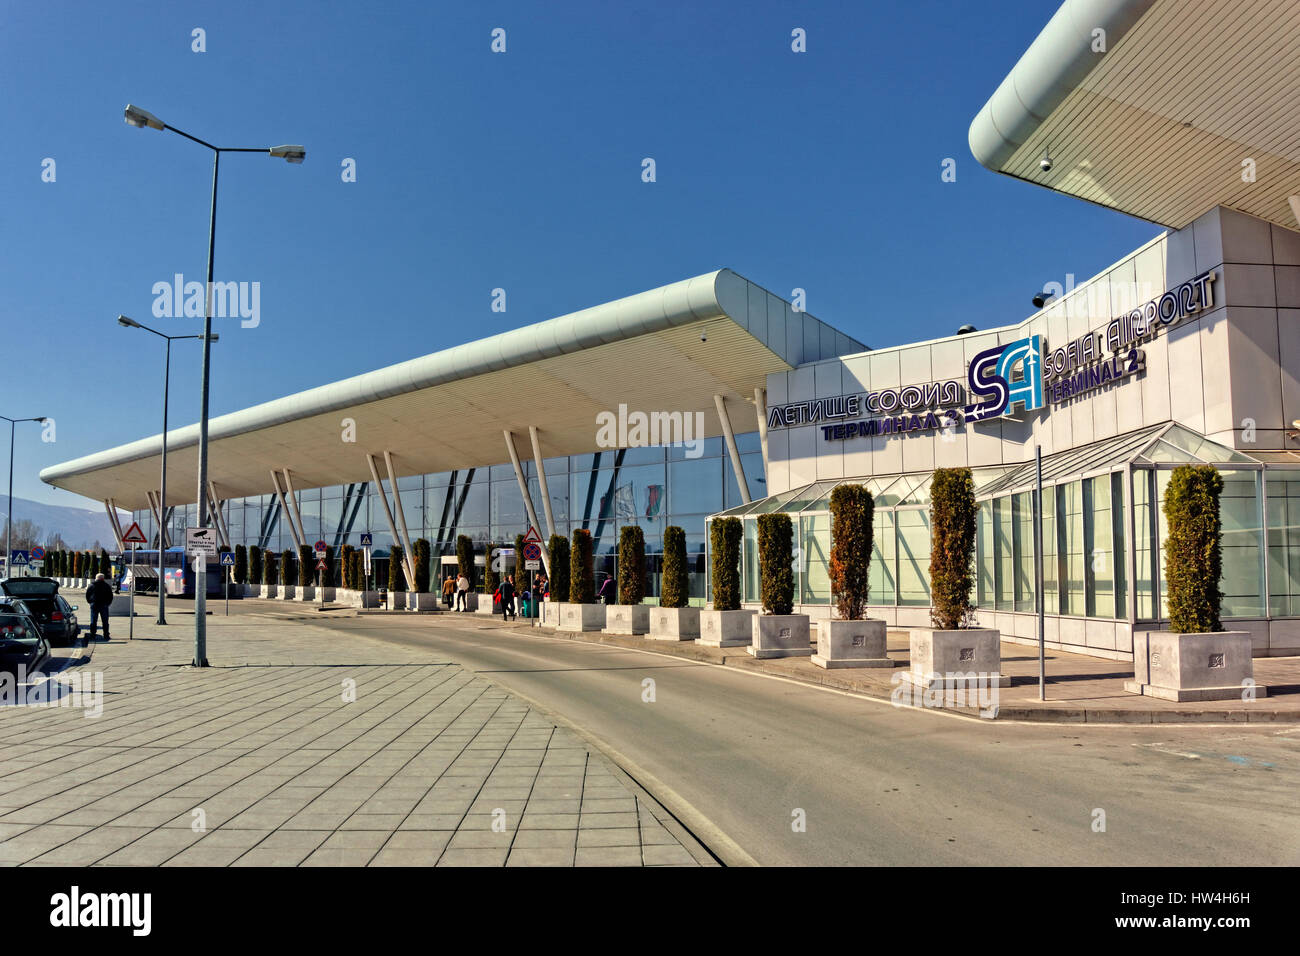 Terminal 2 at Sofia Airport, Bulgaria Stock Photo - Alamy